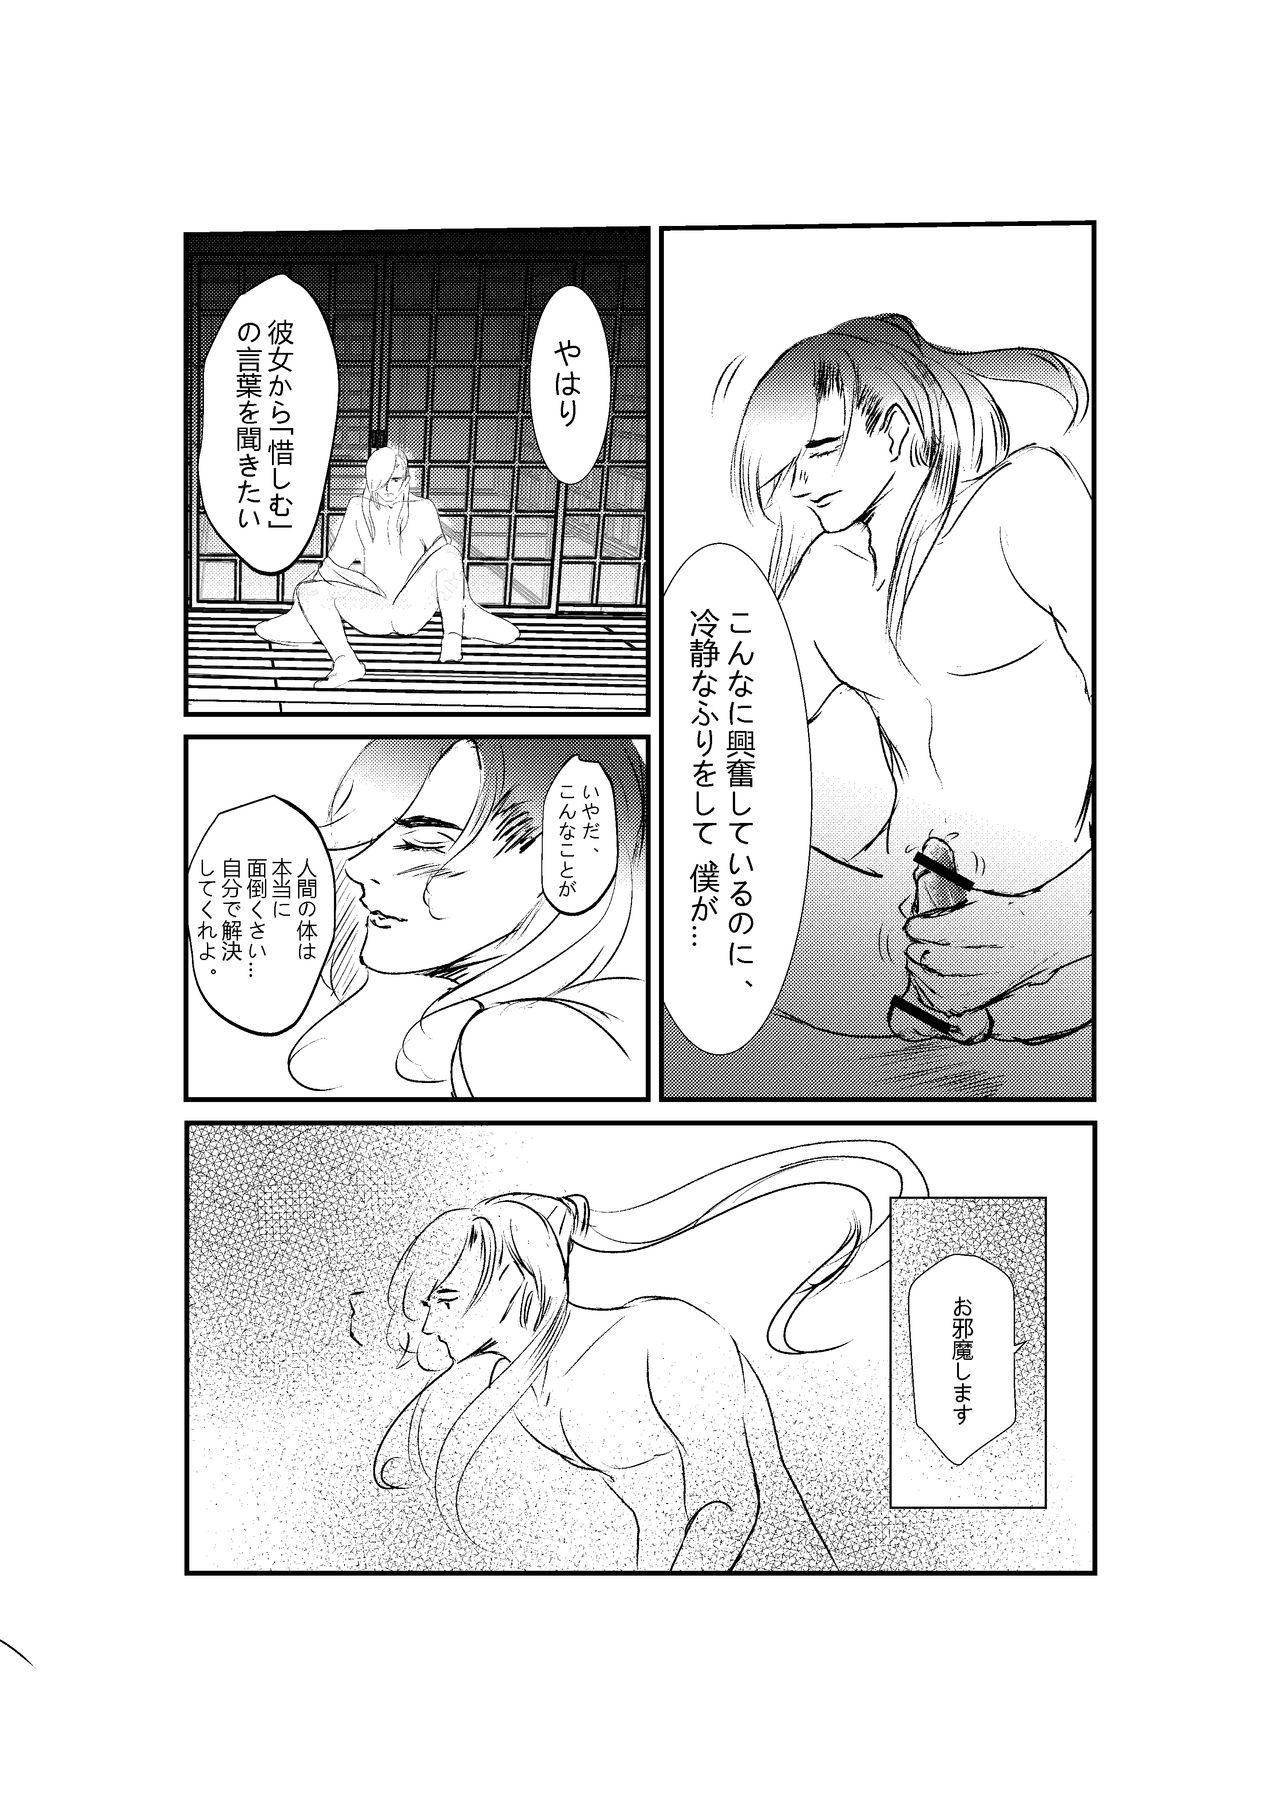 Tranny 刀の花嫁 - Touken ranbu Workout - Page 6